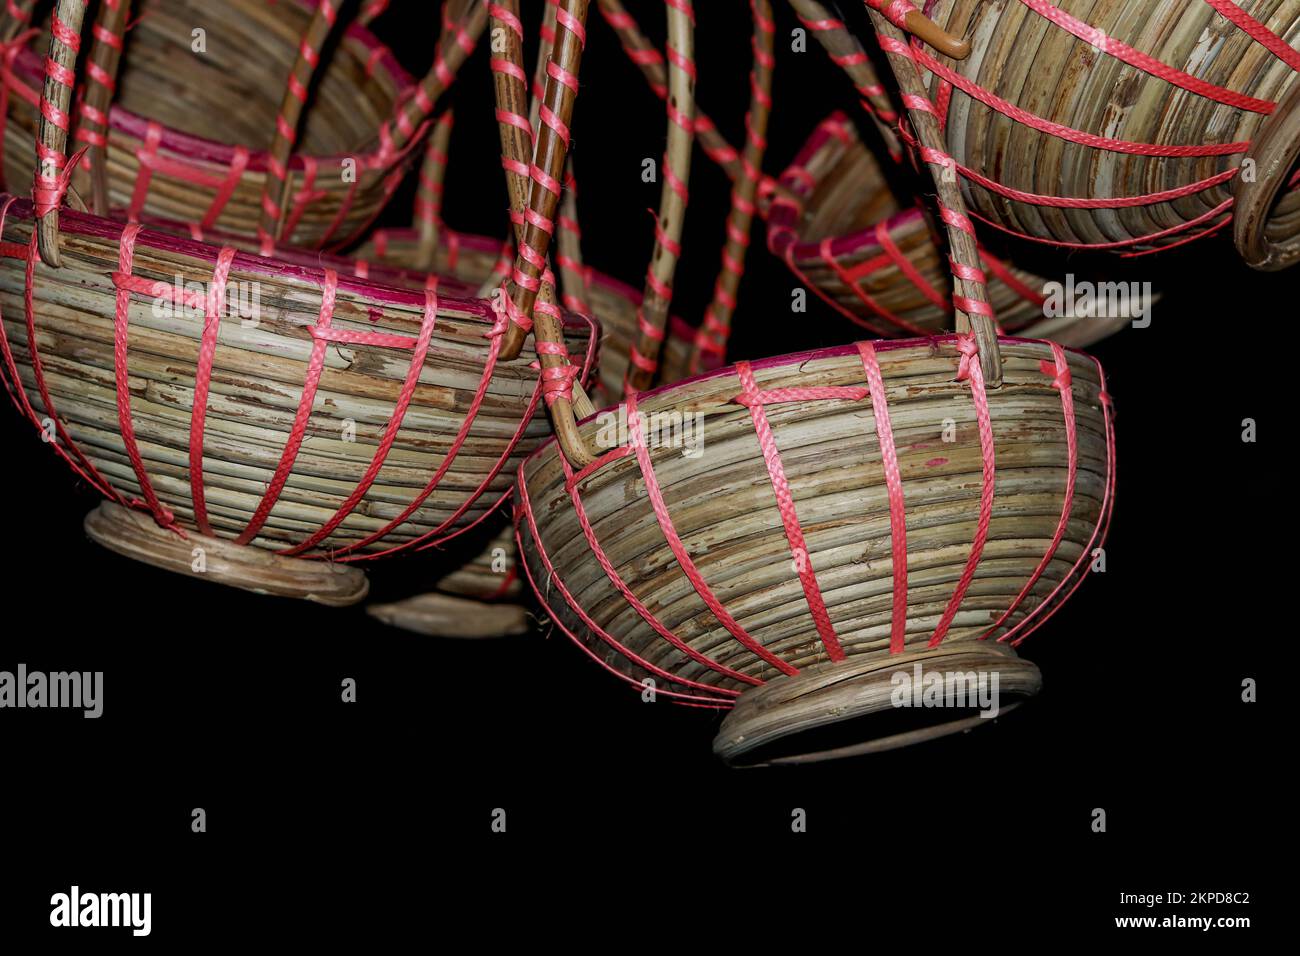 Prodotto artigianale della canna da zucchero. Bambù e prodotti di canna comprendono il più grande sottosettore di artigianato. La canna è usata per fare gli accessori comuni della famiglia Foto Stock